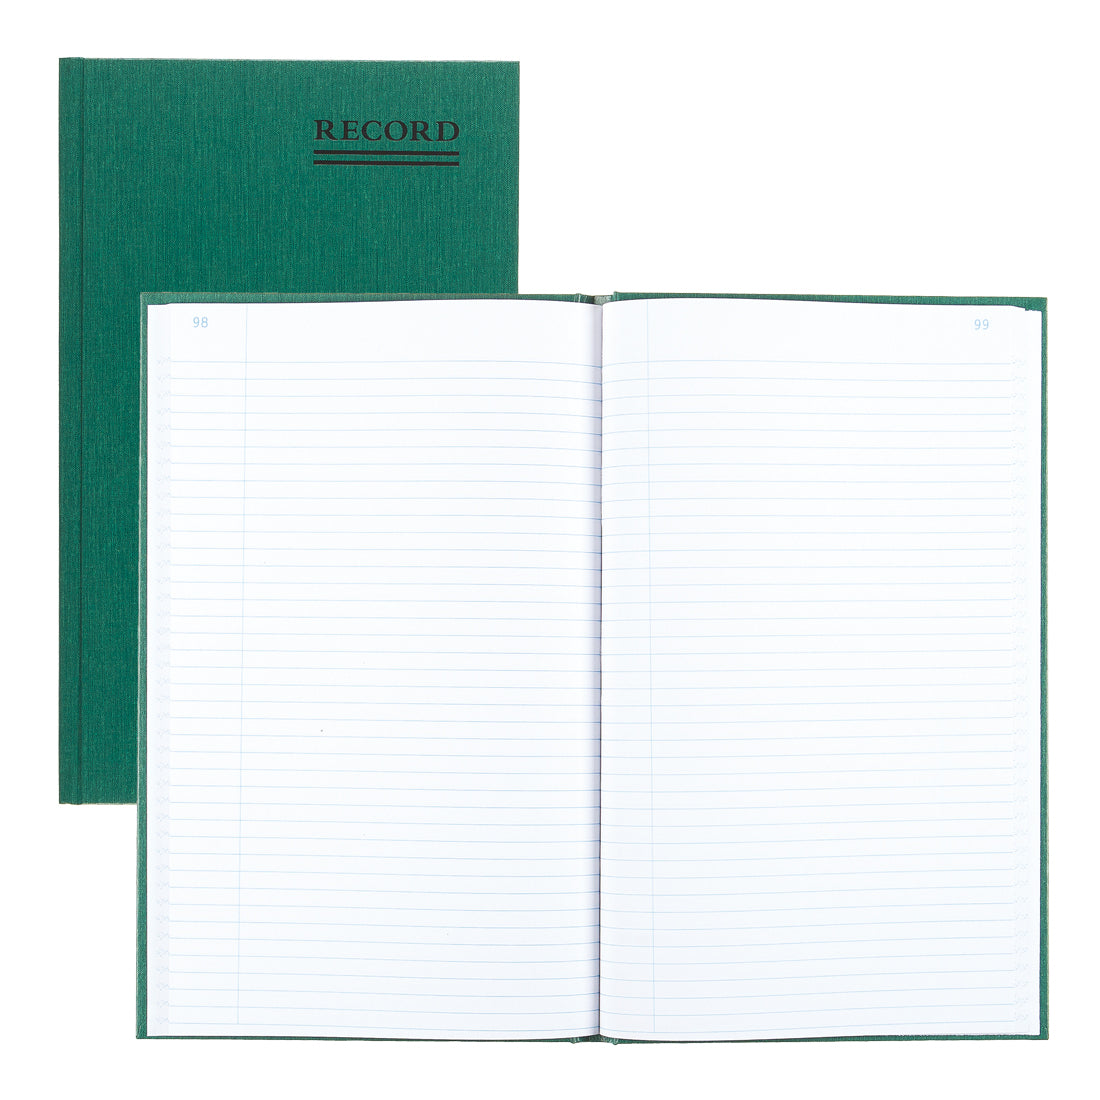 Emerald Series Record Book 56111